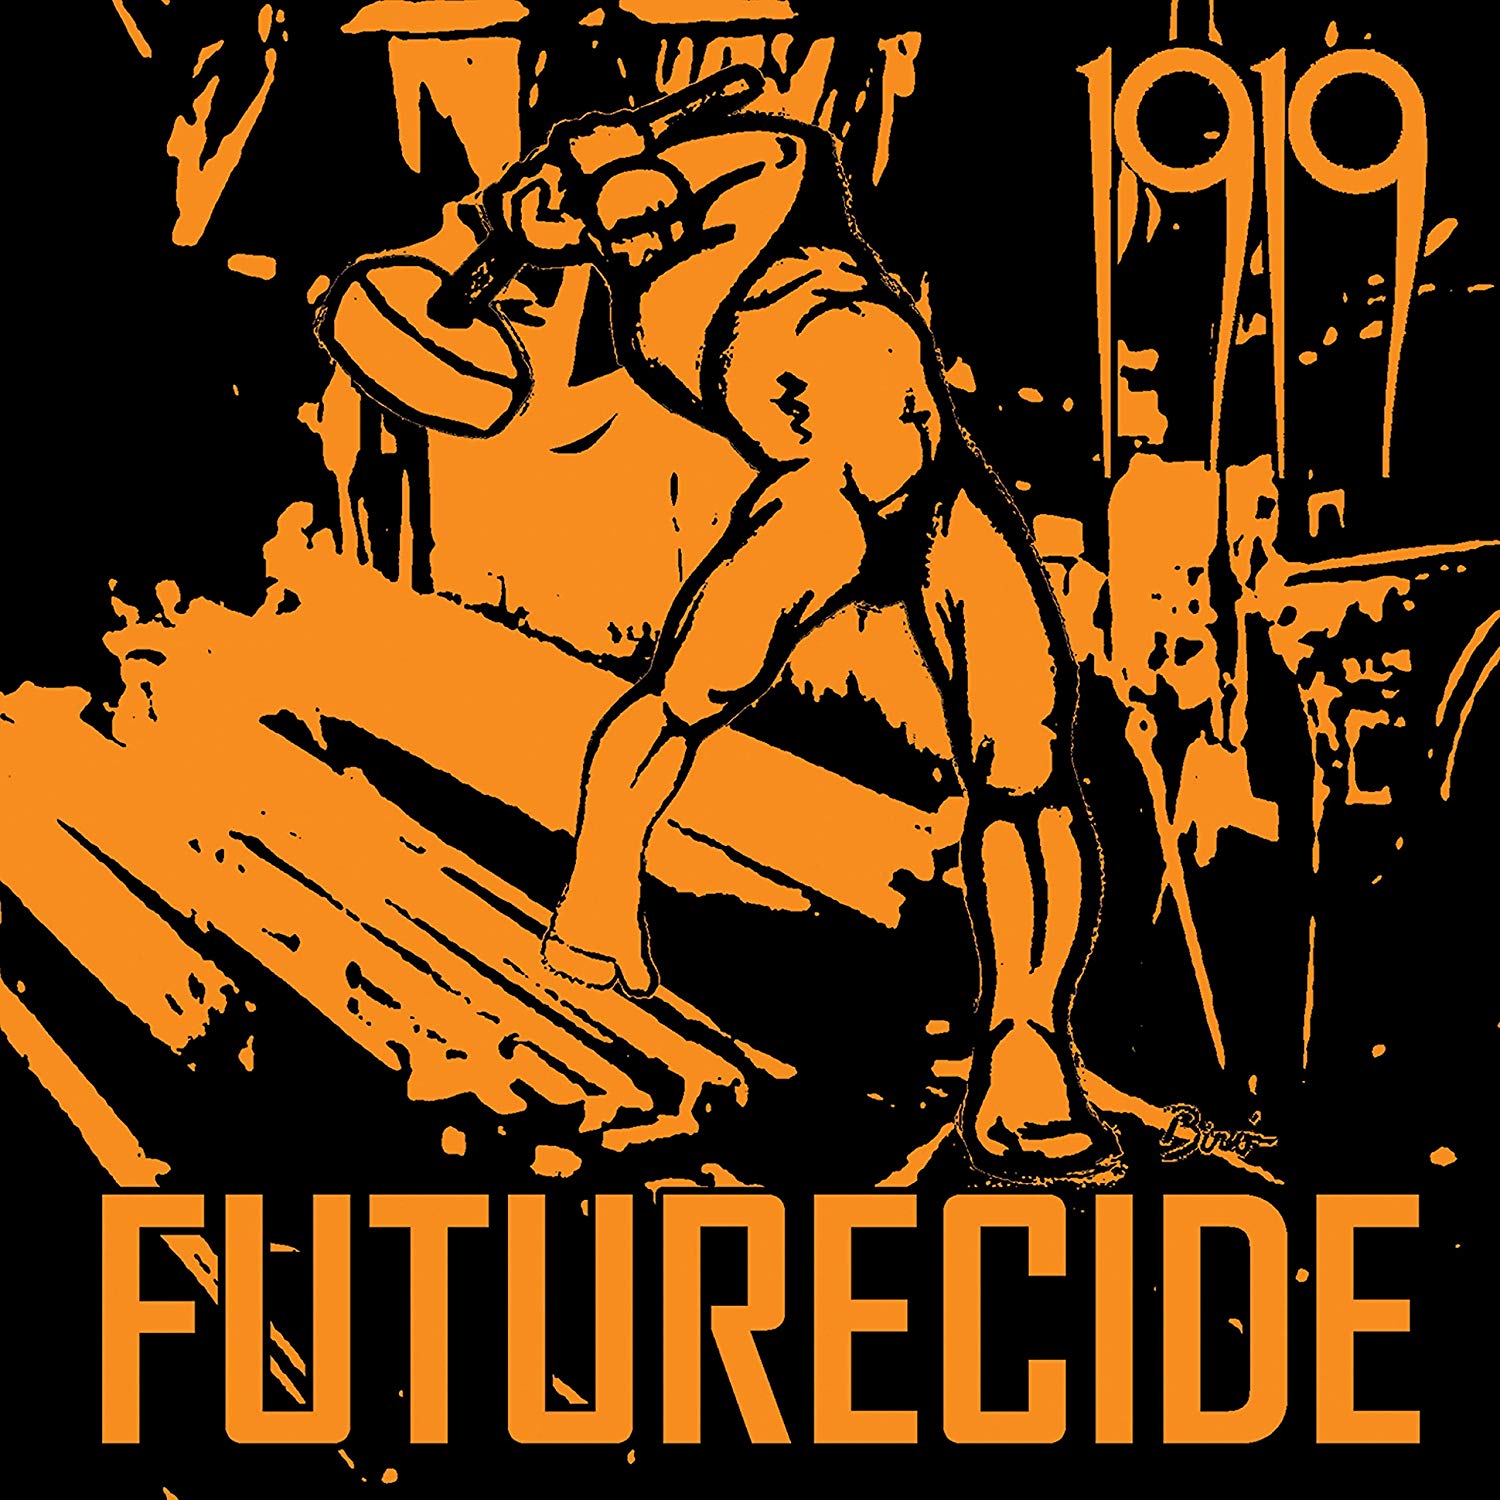 Vinile 1919 - Futurecide NUOVO SIGILLATO, EDIZIONE DEL 18/10/2019 SUBITO DISPONIBILE